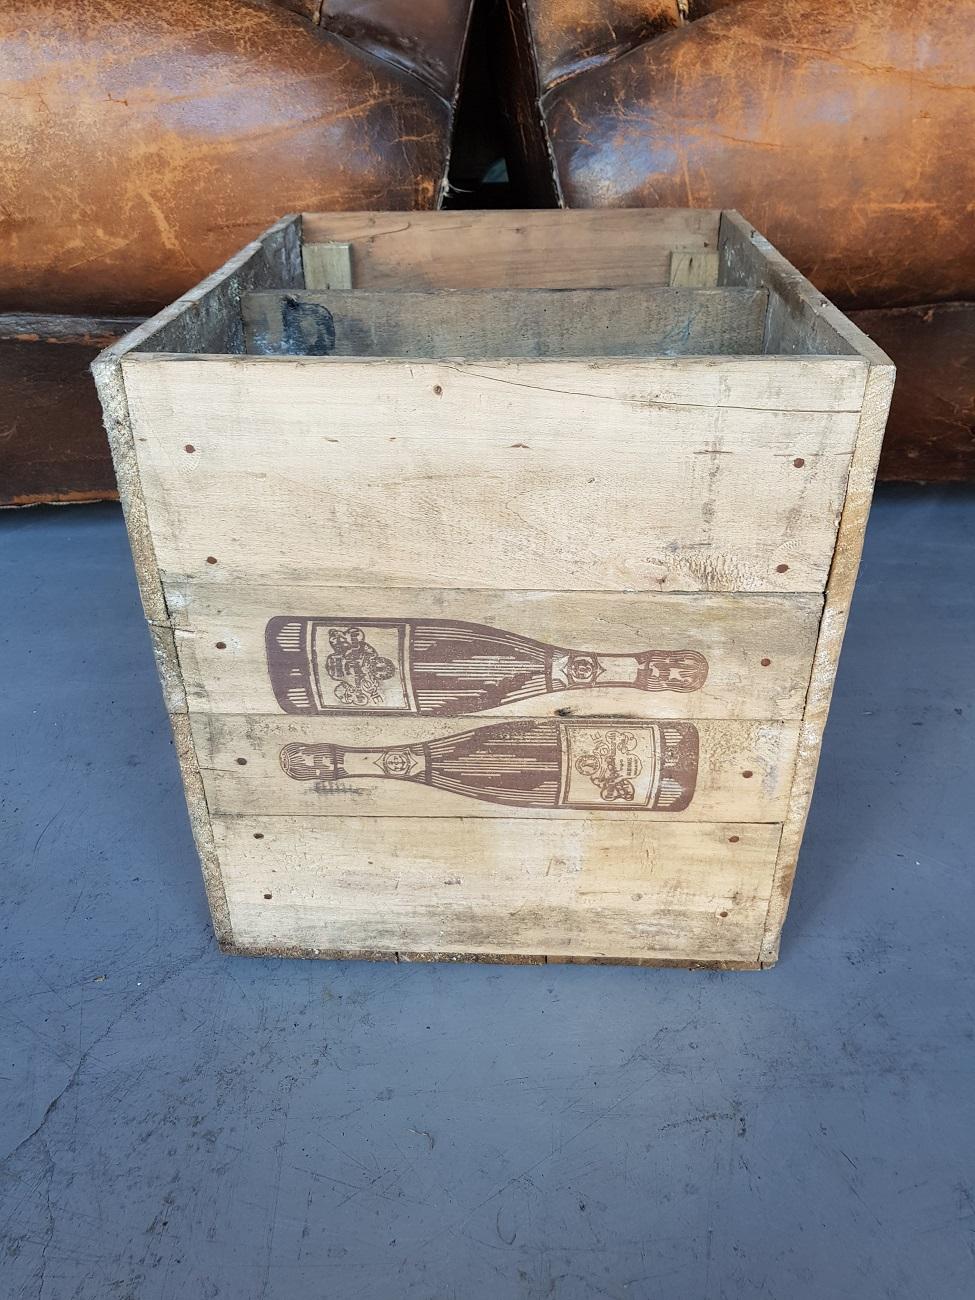 veuve clicquot wooden crate